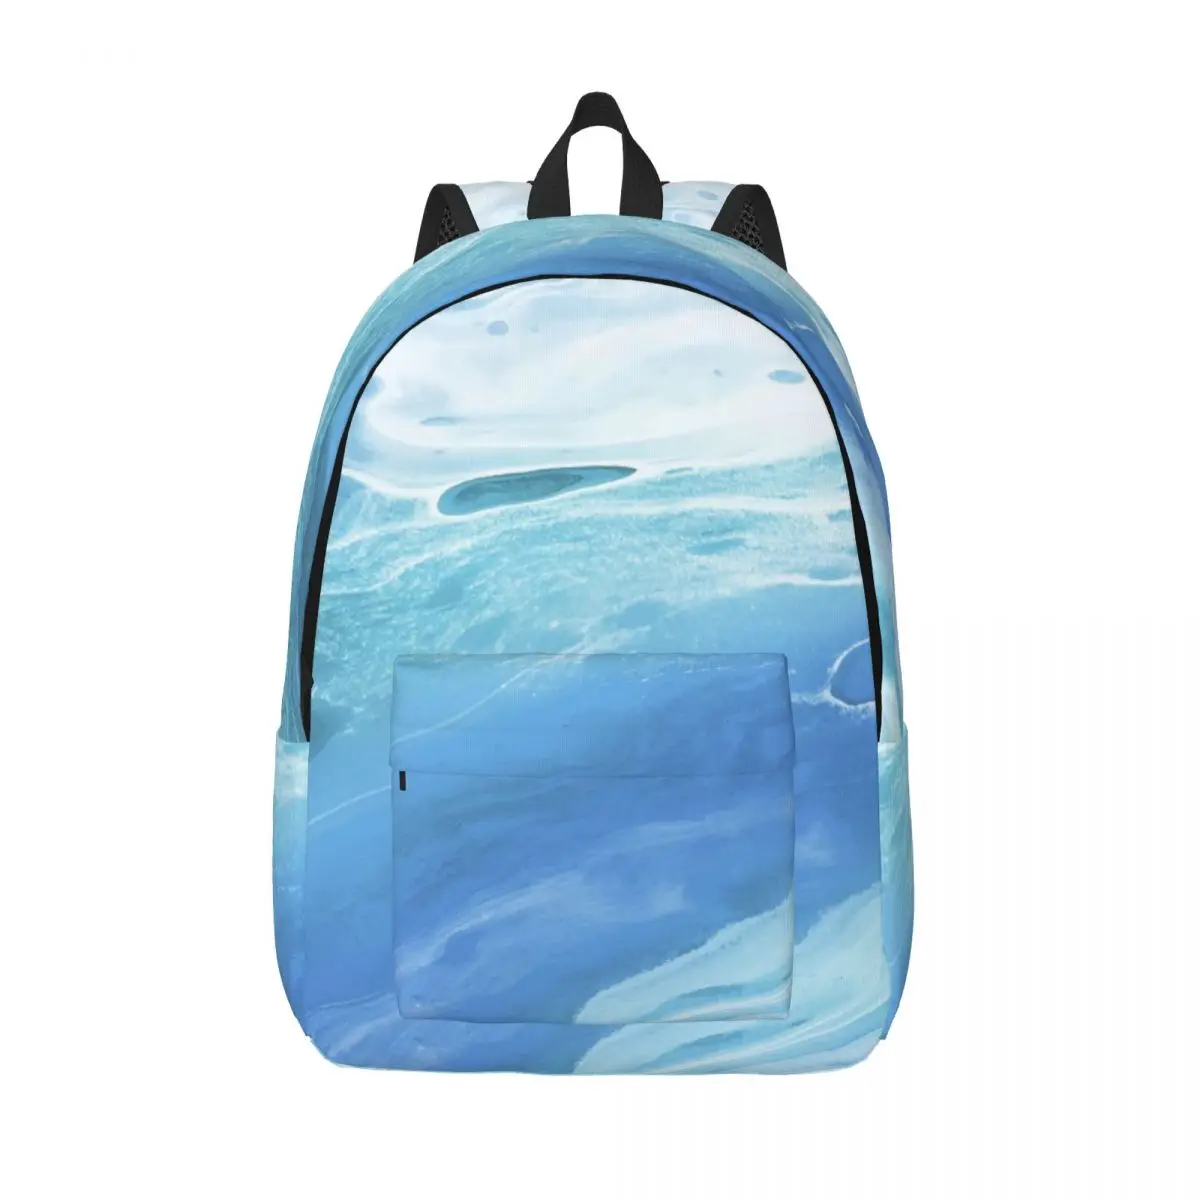 Студенческая сумка, синий мраморный рюкзак, легкий рюкзак для родителей и детей, сумка для ноутбука